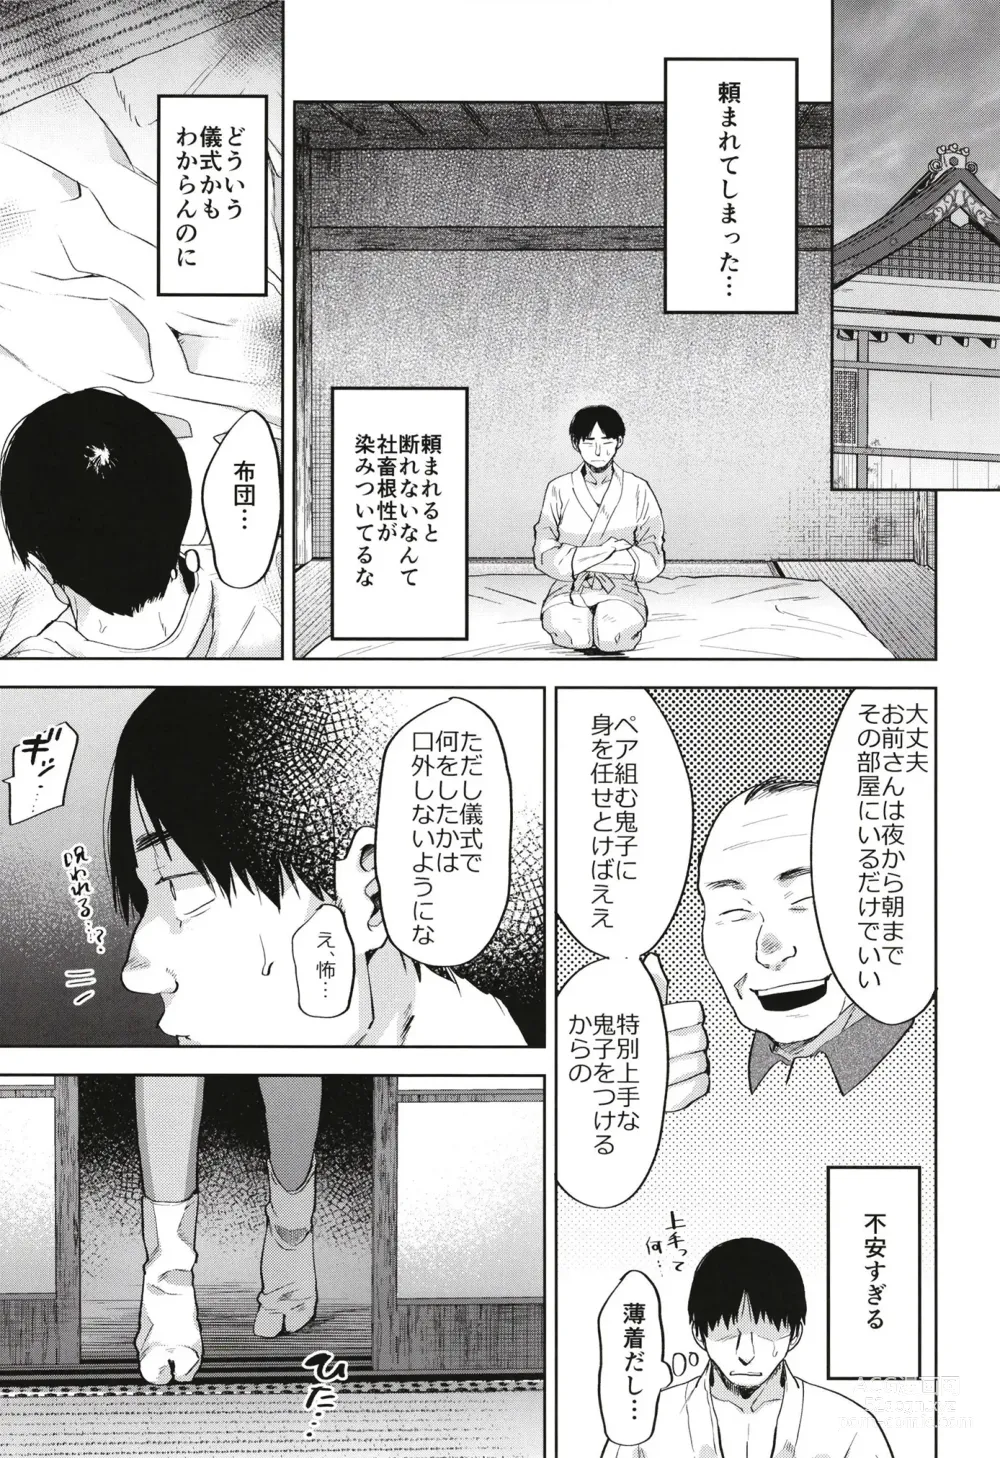 Page 9 of doujinshi Onigo matsurinoyoru